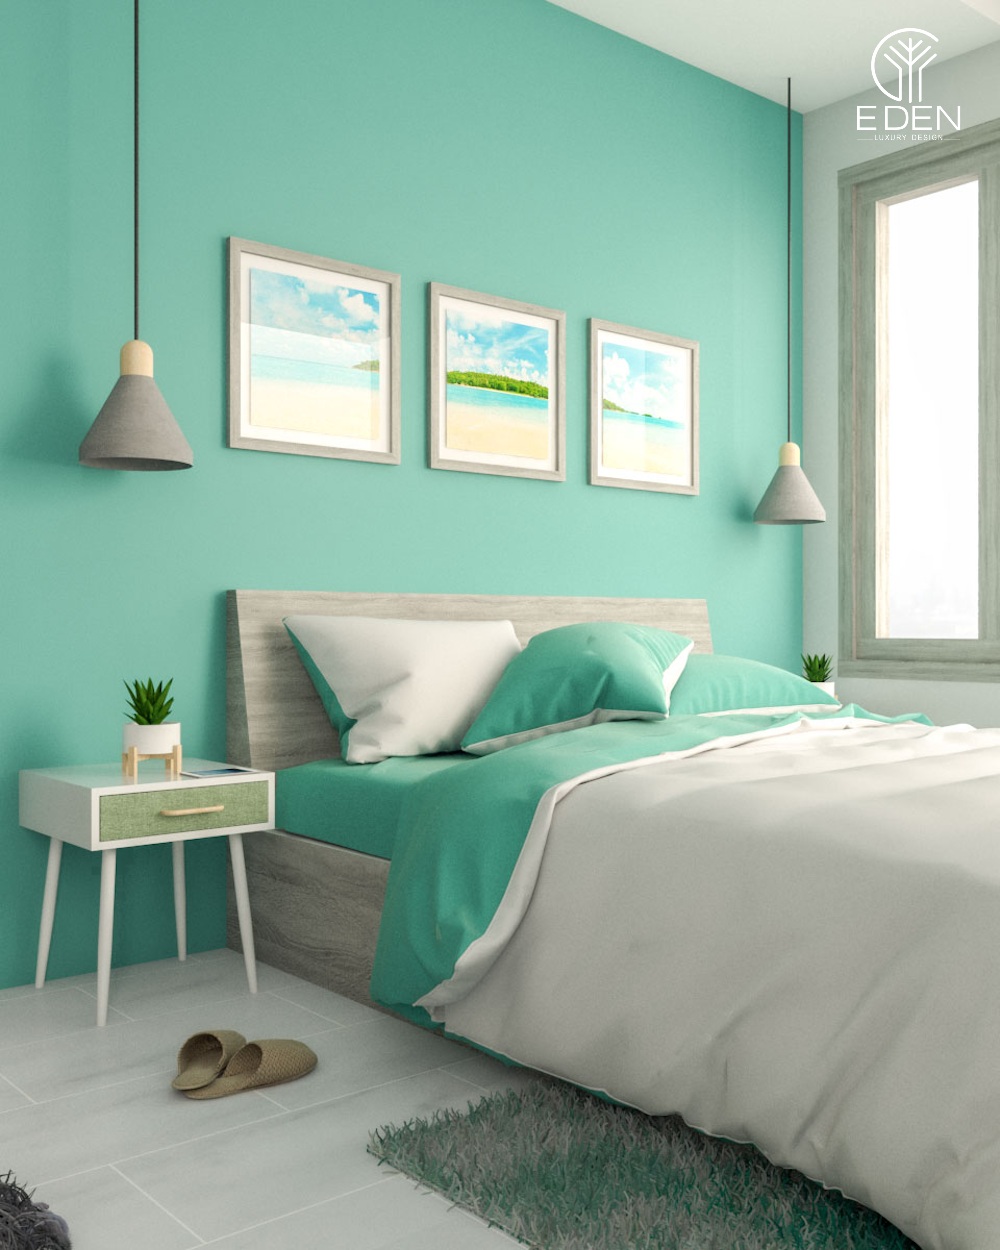 Thiết kế phòng ngủ độc đáo và mát mẻ với phòng xanh ngọc bích